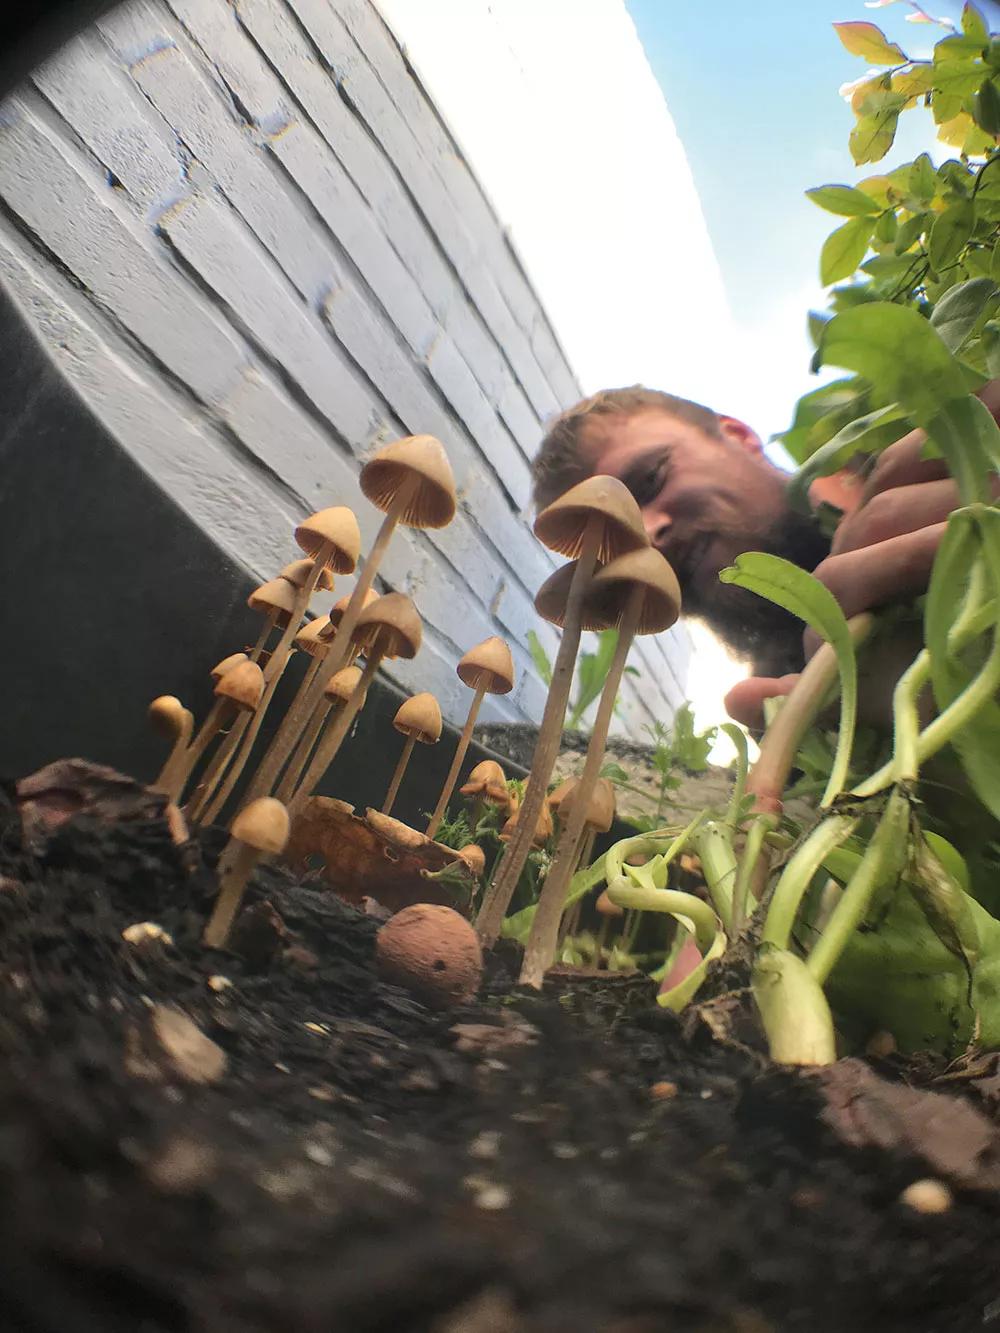  Mossy en su jardín mirando a sus amigos los hongos.